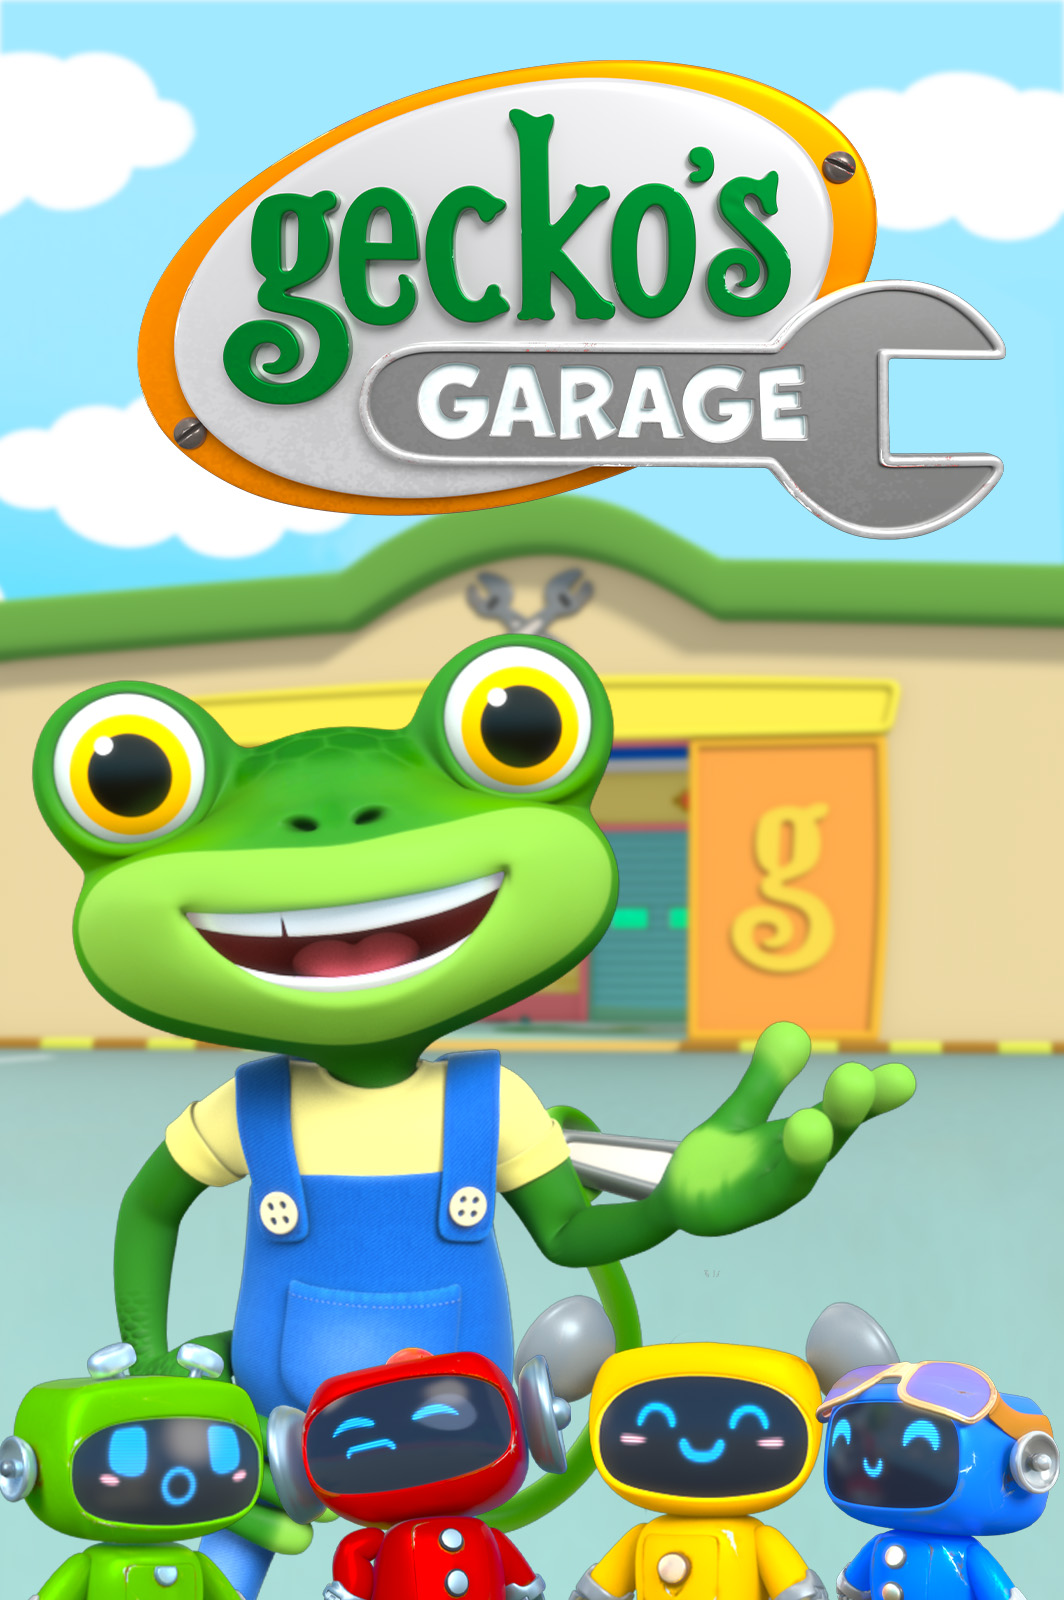     Gecko's Garage